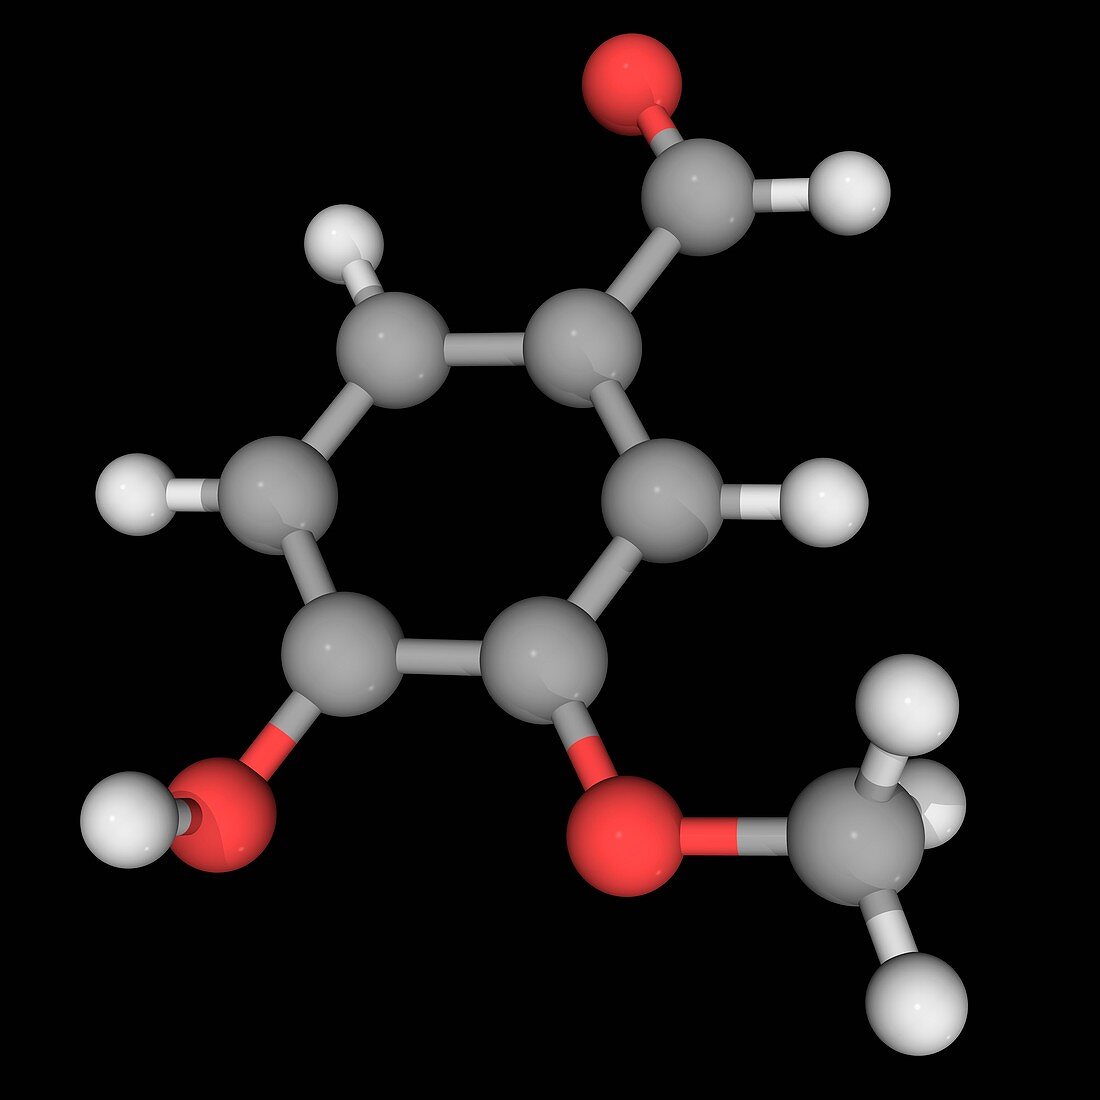 Vanillin molecule